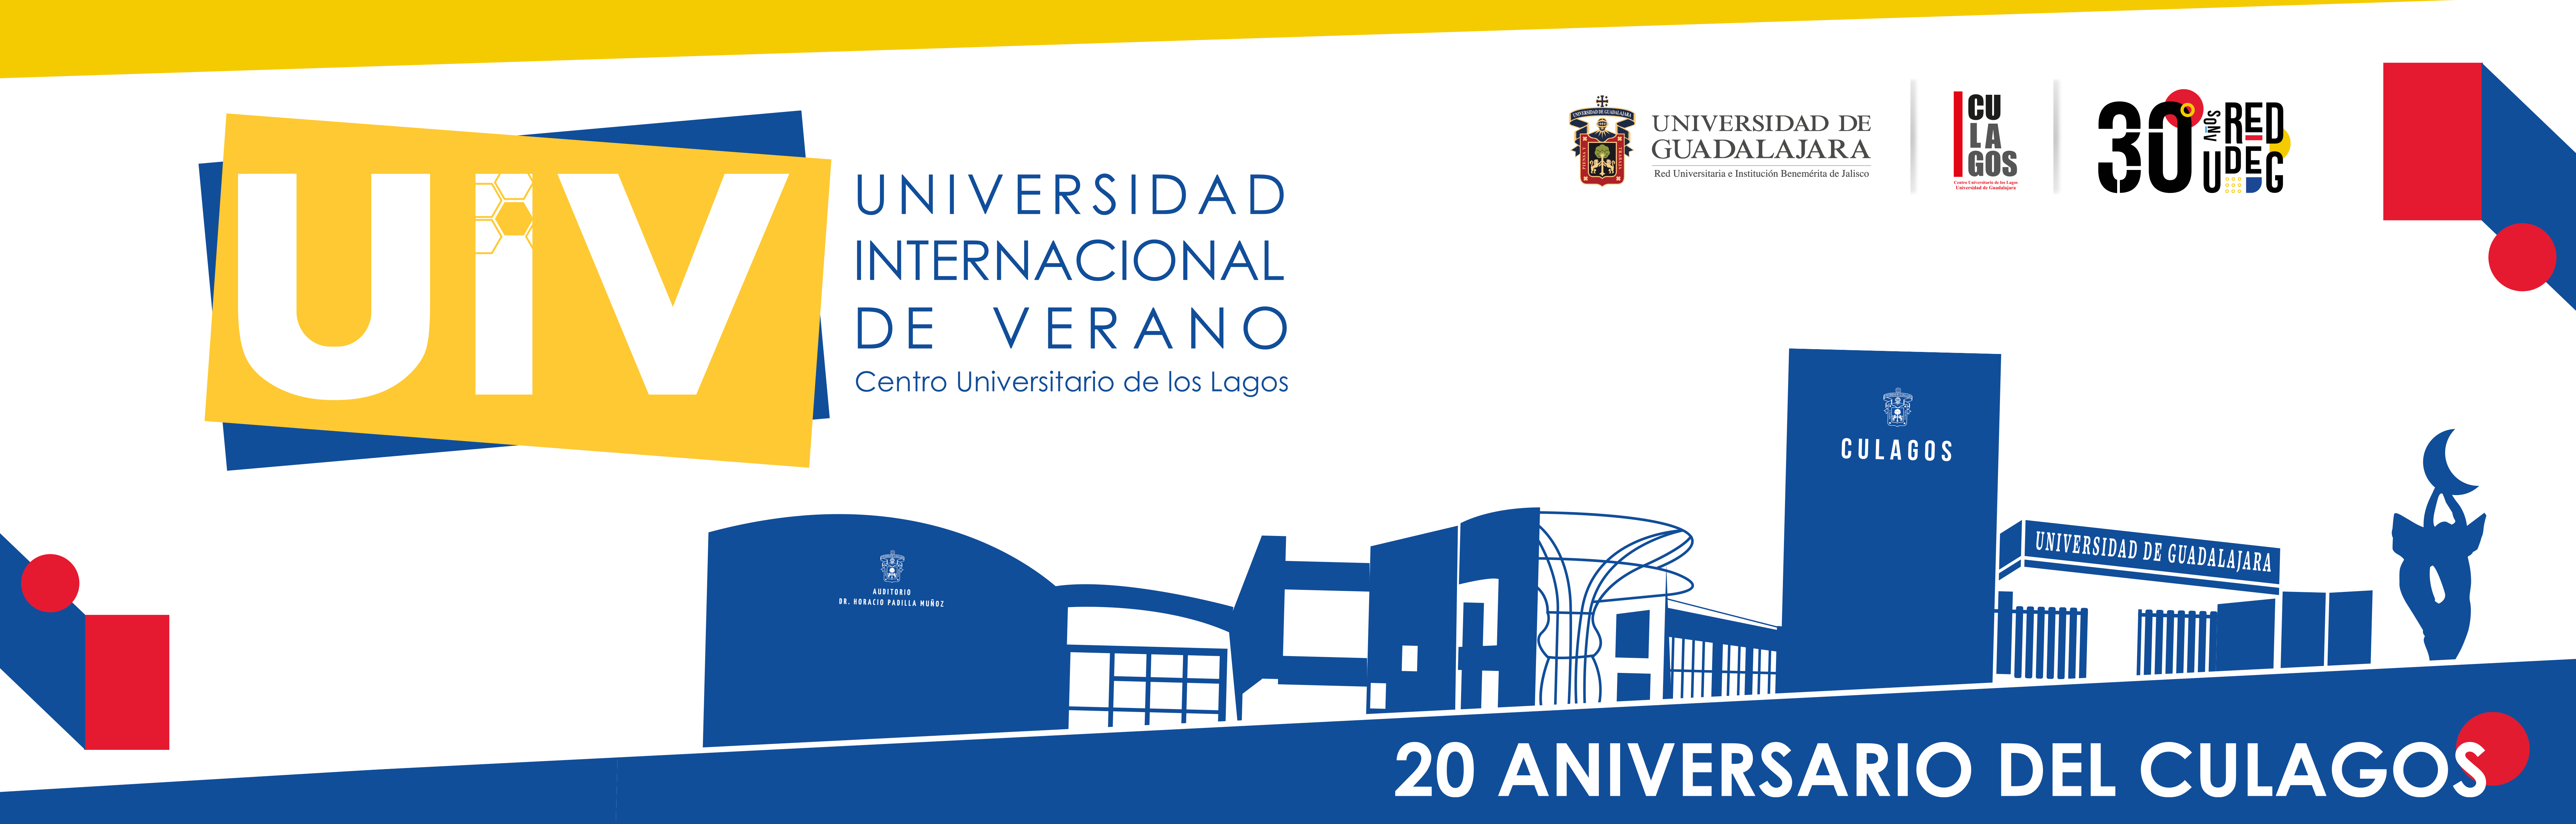 UIV - Universidad Internacional de Verano